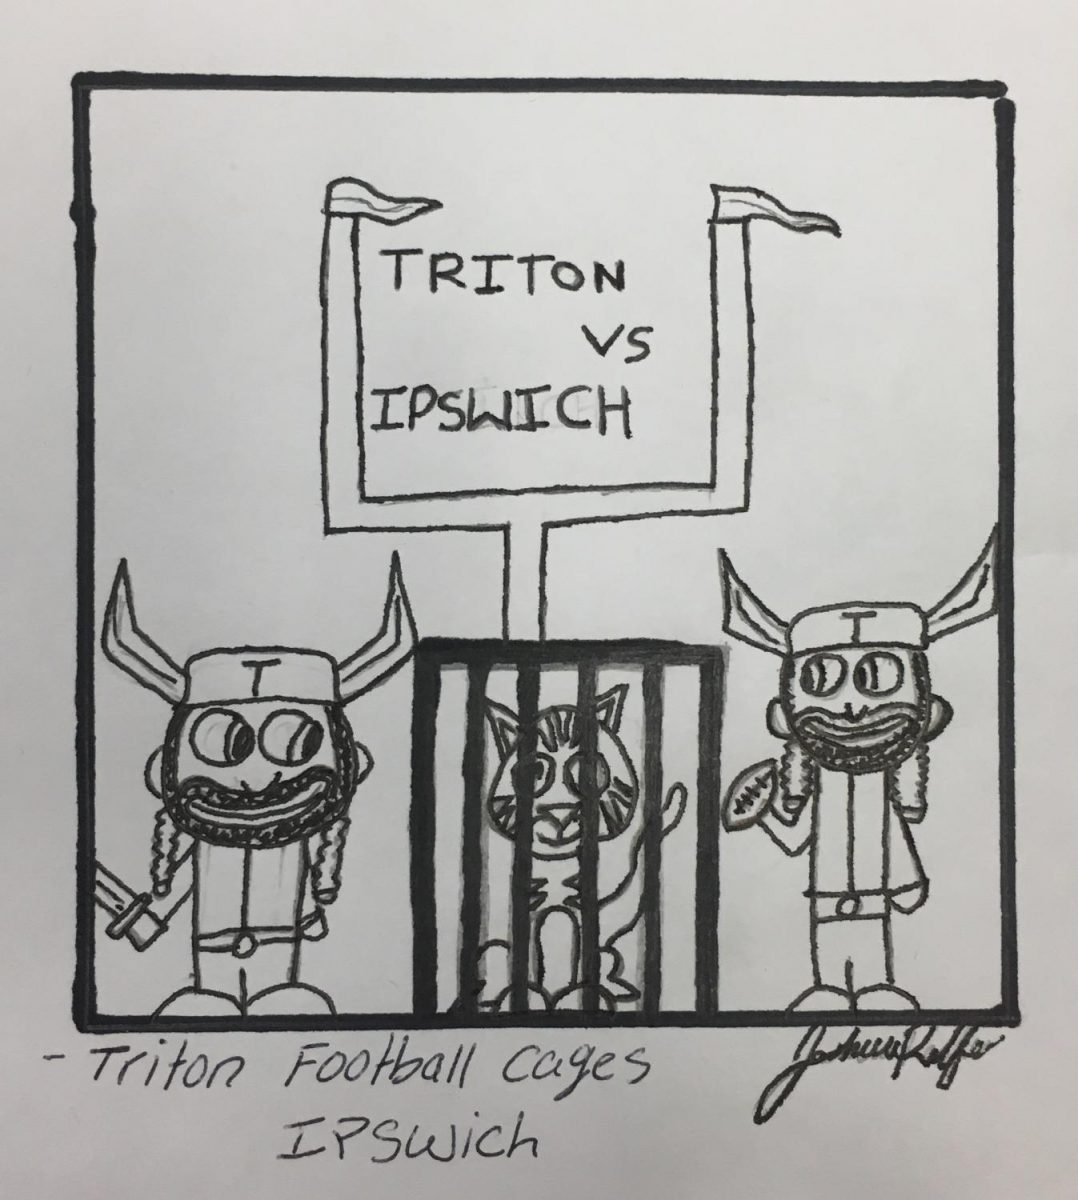 Triton vs Ipswich